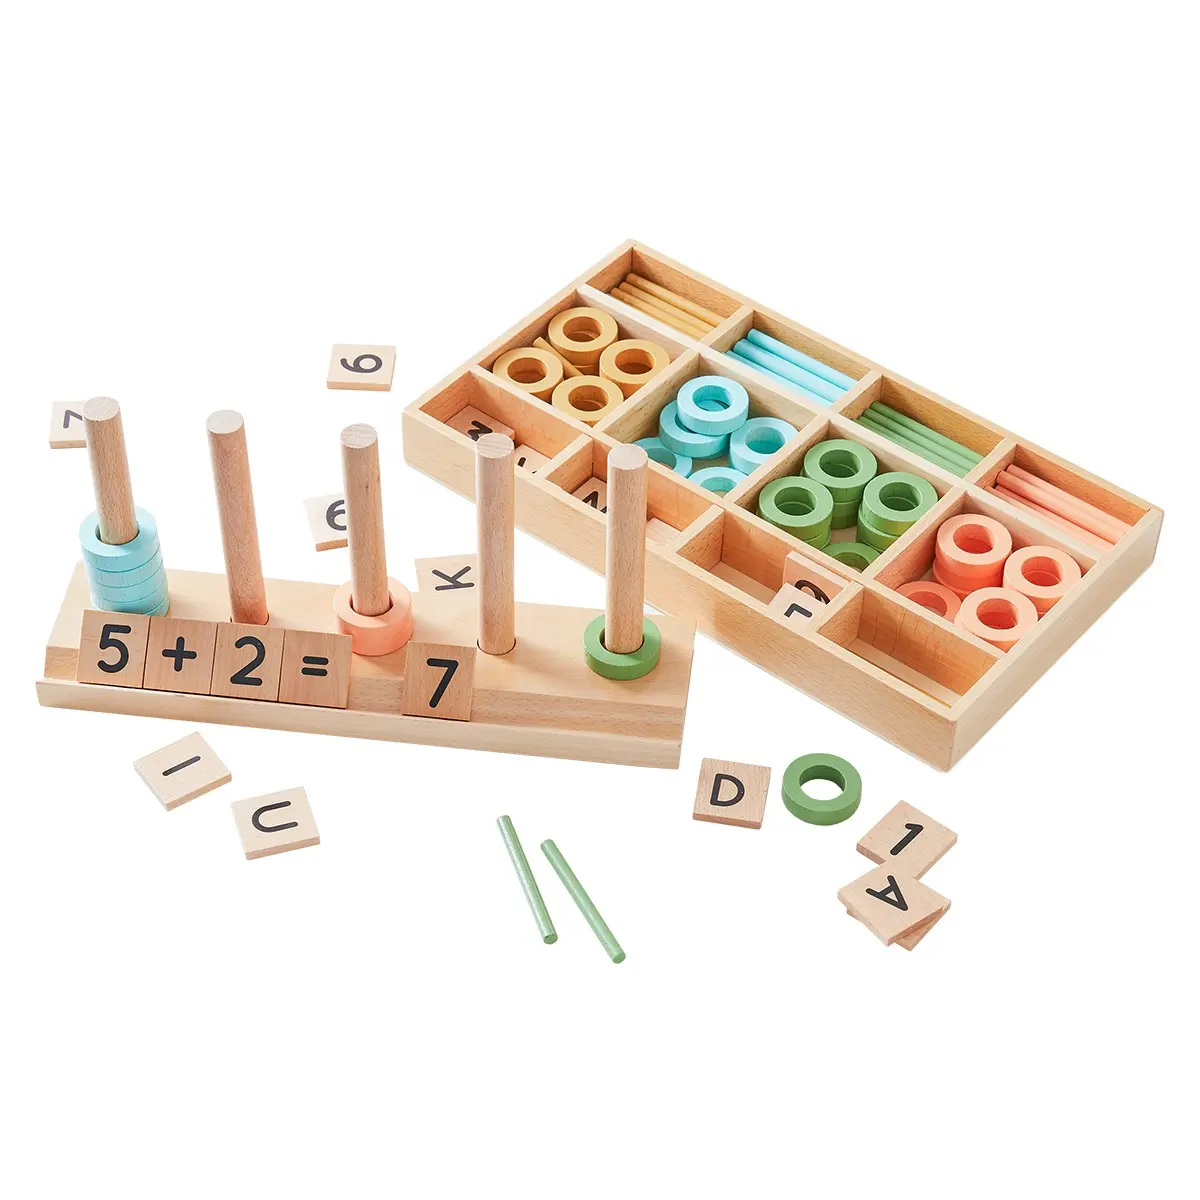 Asweetsモンテッソーリ木製パズルカウントおもちゃ就学前学習教育数学おもちゃ